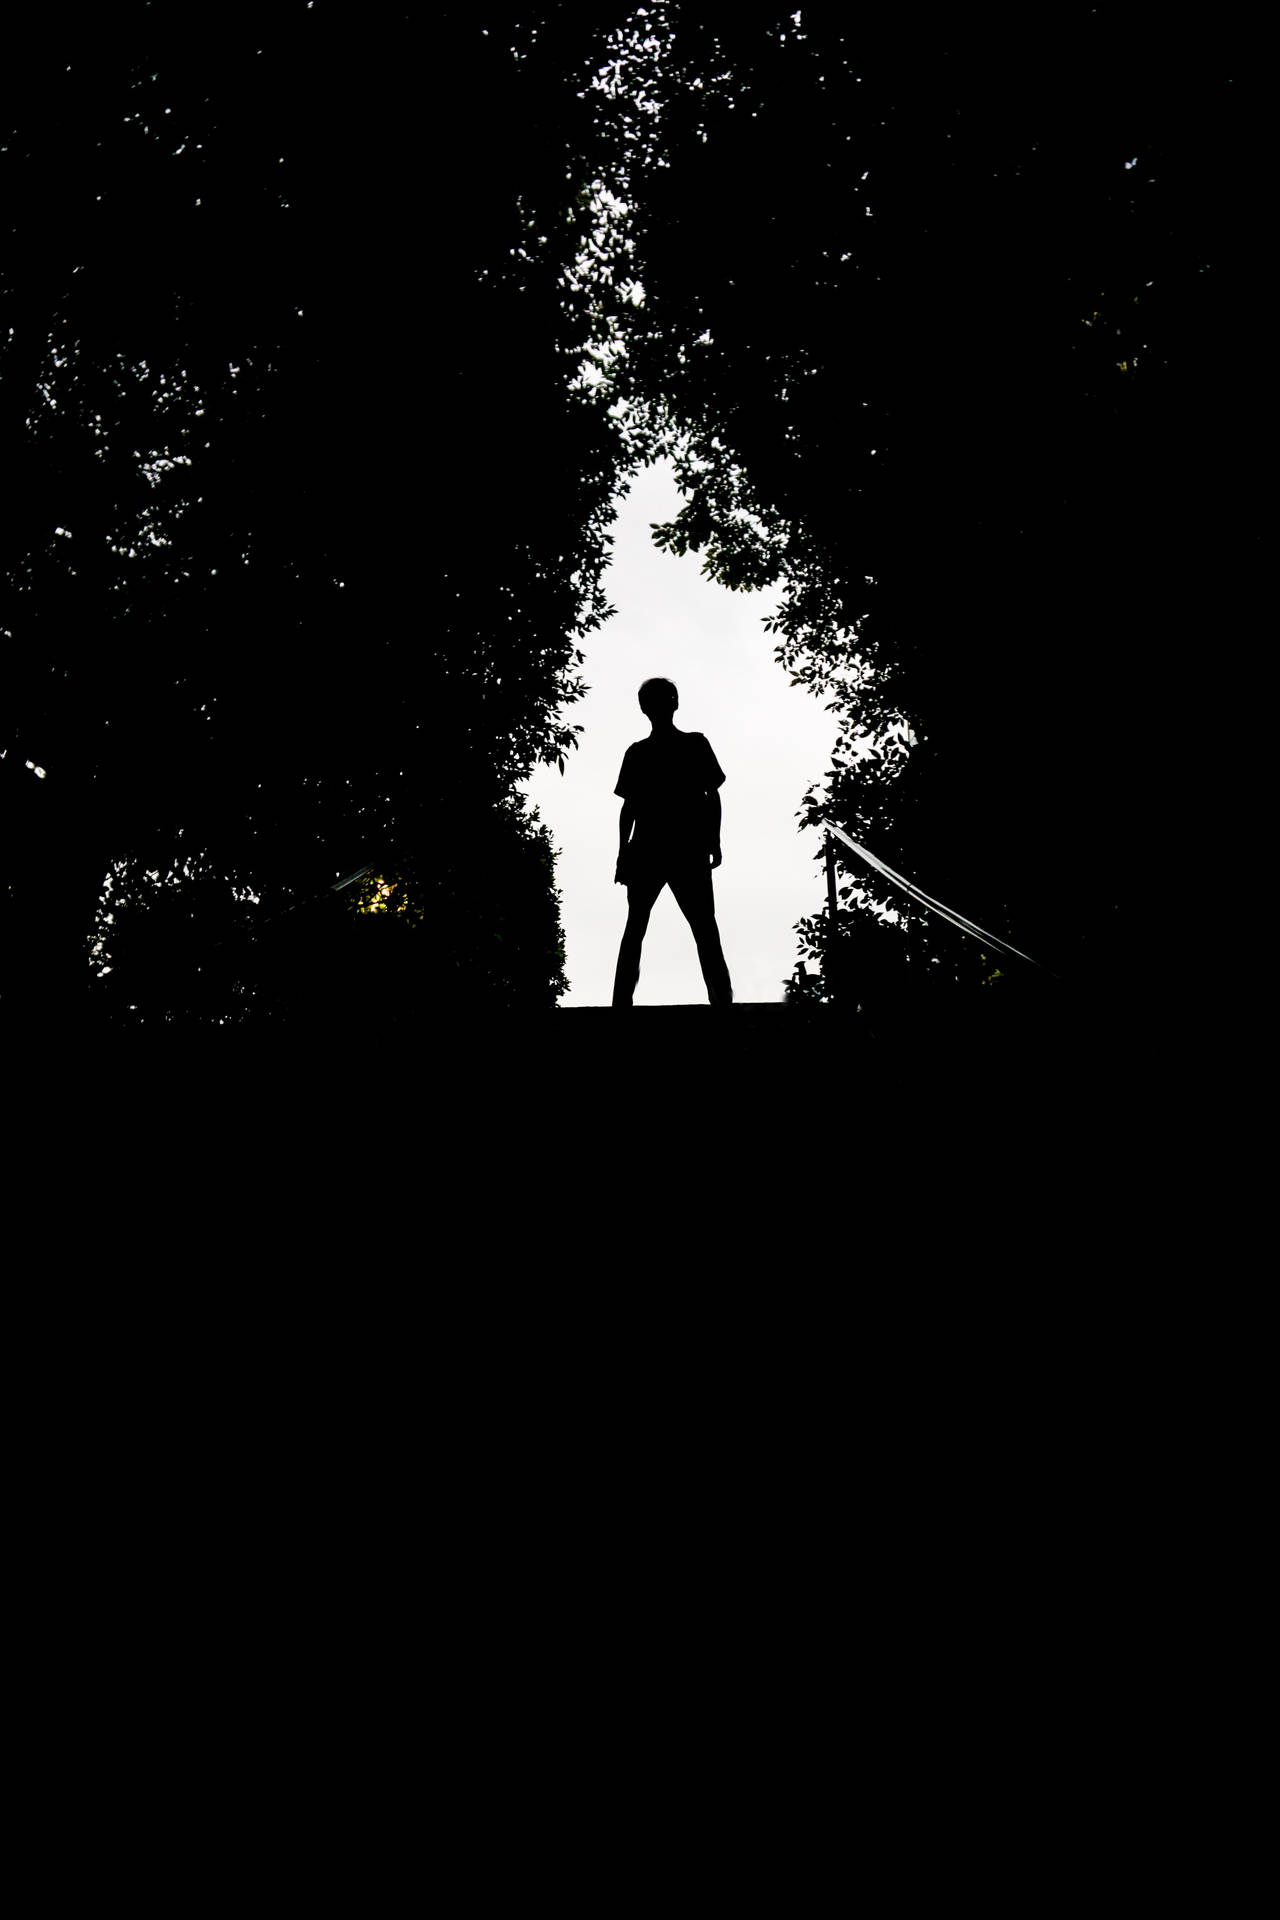 Boy Shadow Framed By Foliage